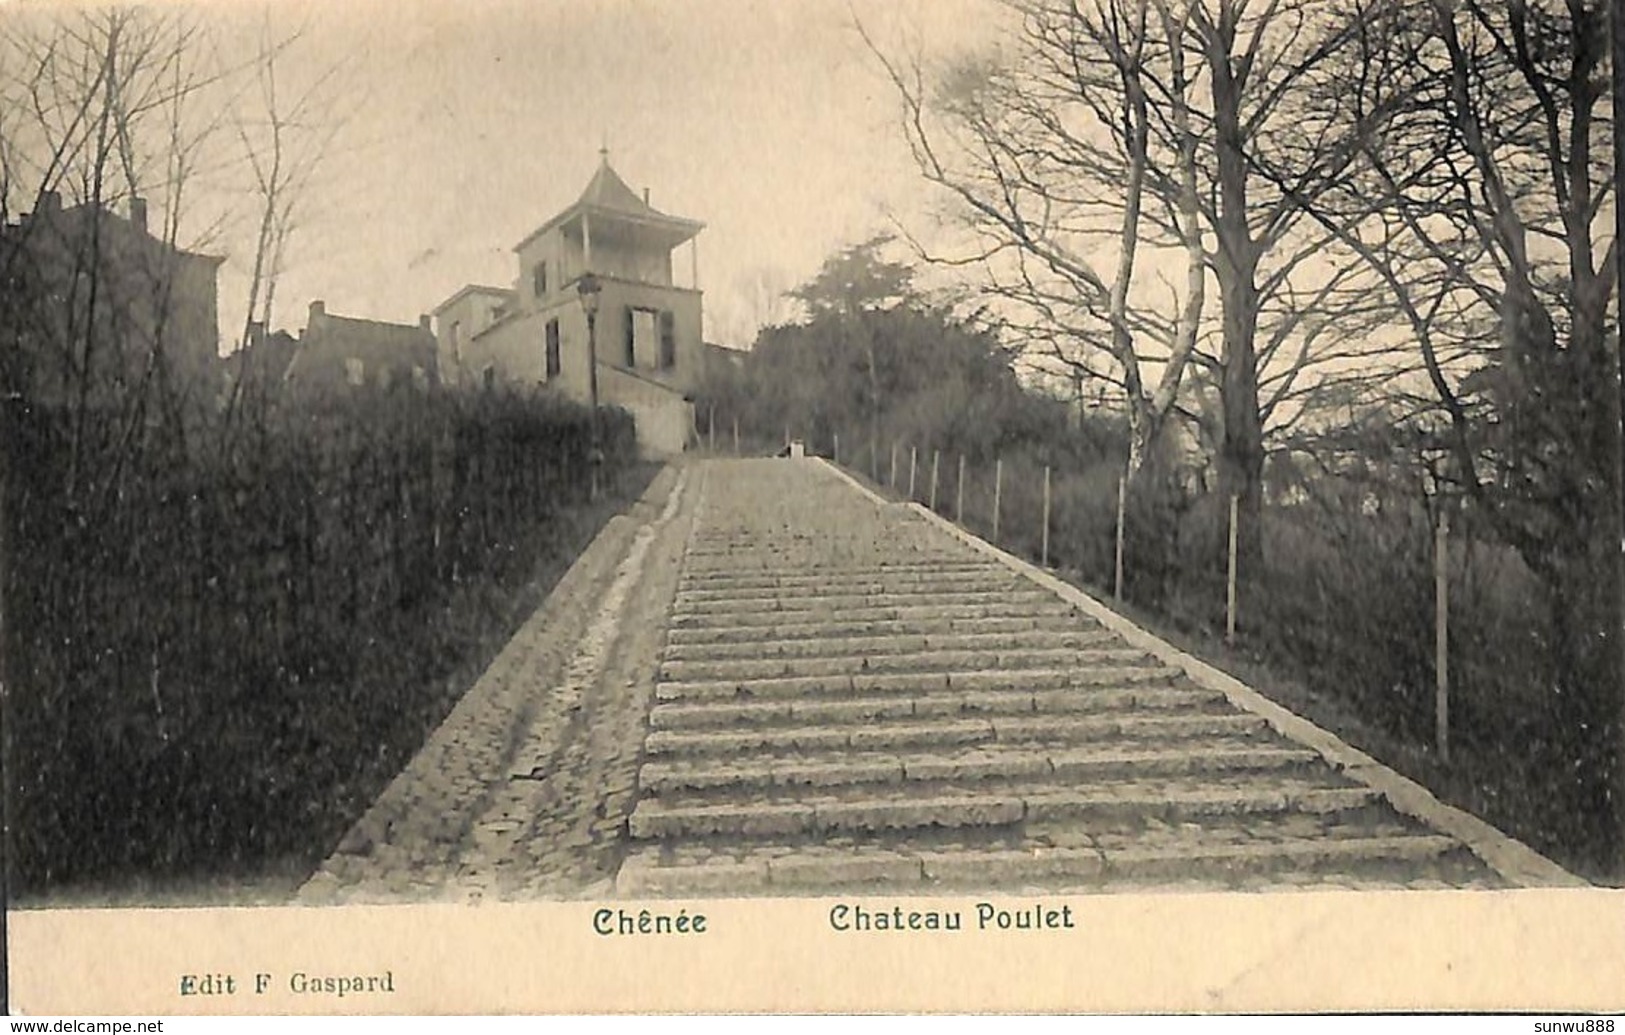 Chênée - Château Poulet (Edit. F. Gaspard) - Liege